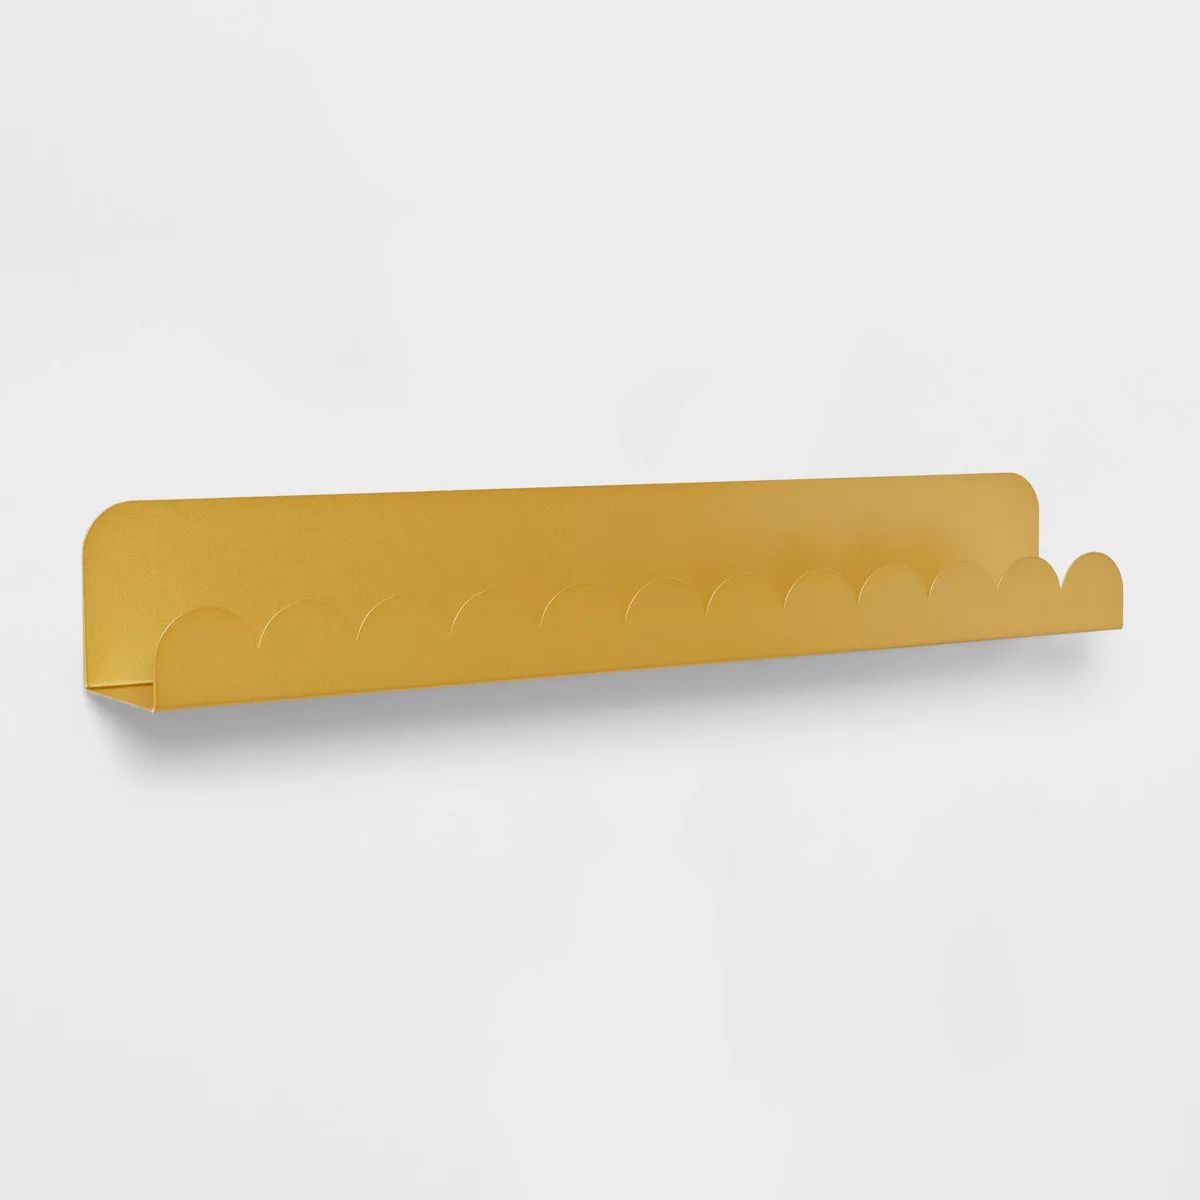 Metal Luxe Kids' Wall Shelf Gold - Pillowfort™ | Target